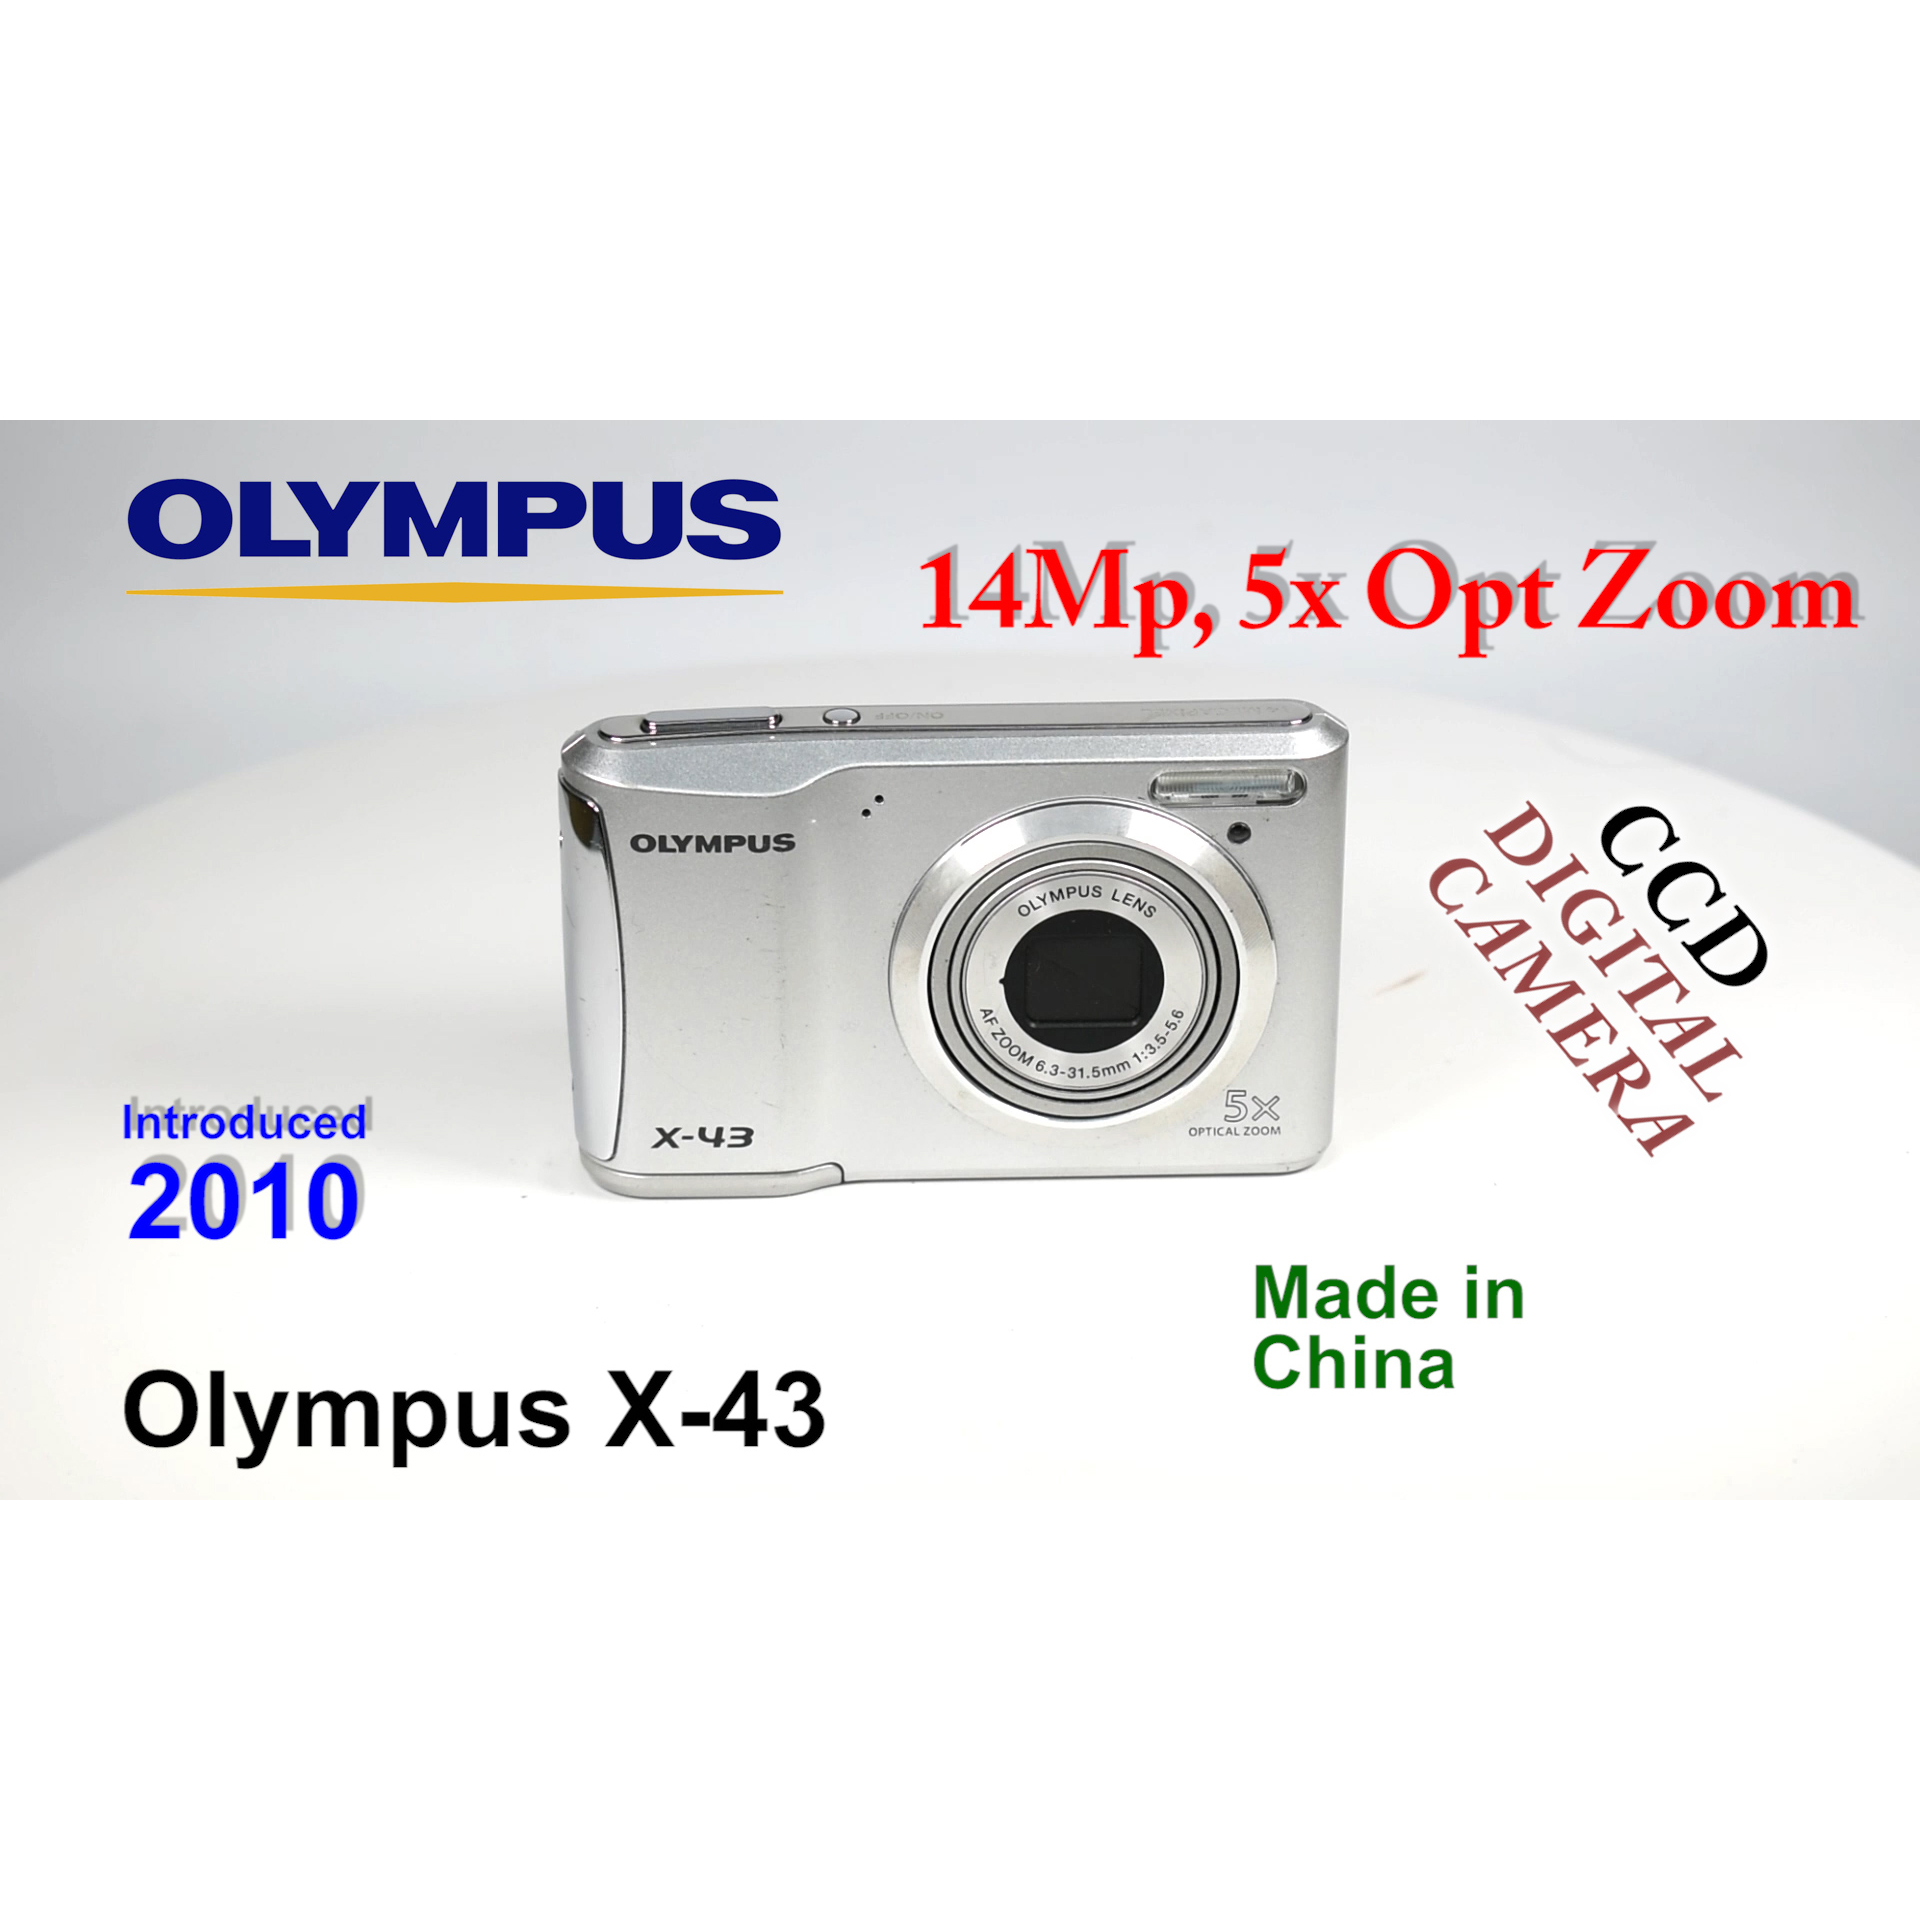 2010 Olympus X-43 – CCD Digital Camera